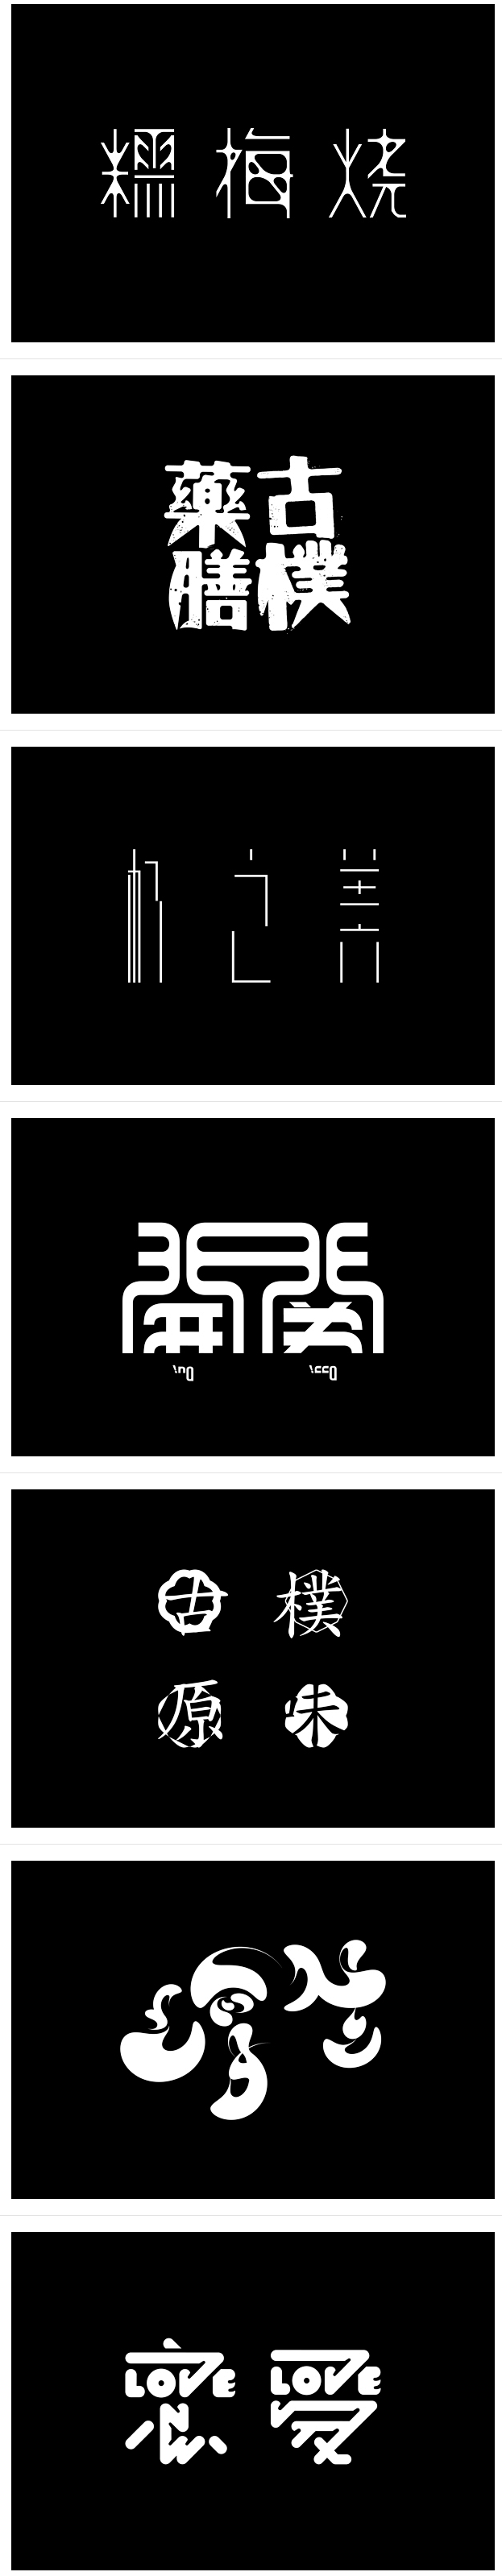 Cai Peng：汉子字体设计 设计圈 ...